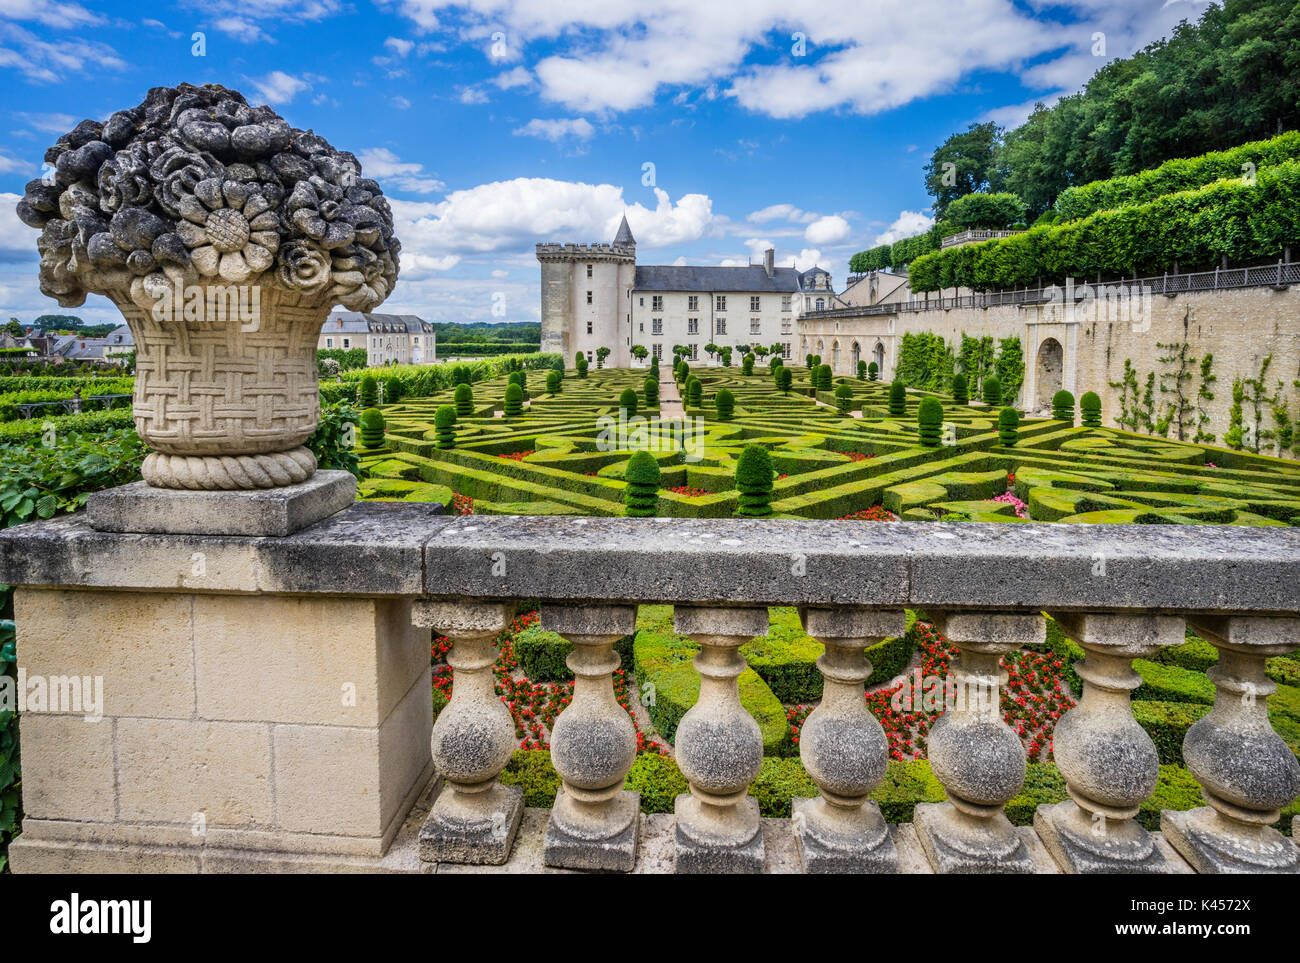 Francia, Indre-et-Loire departamento, château de Villandry, vista de los jardines ornamentales Foto de stock